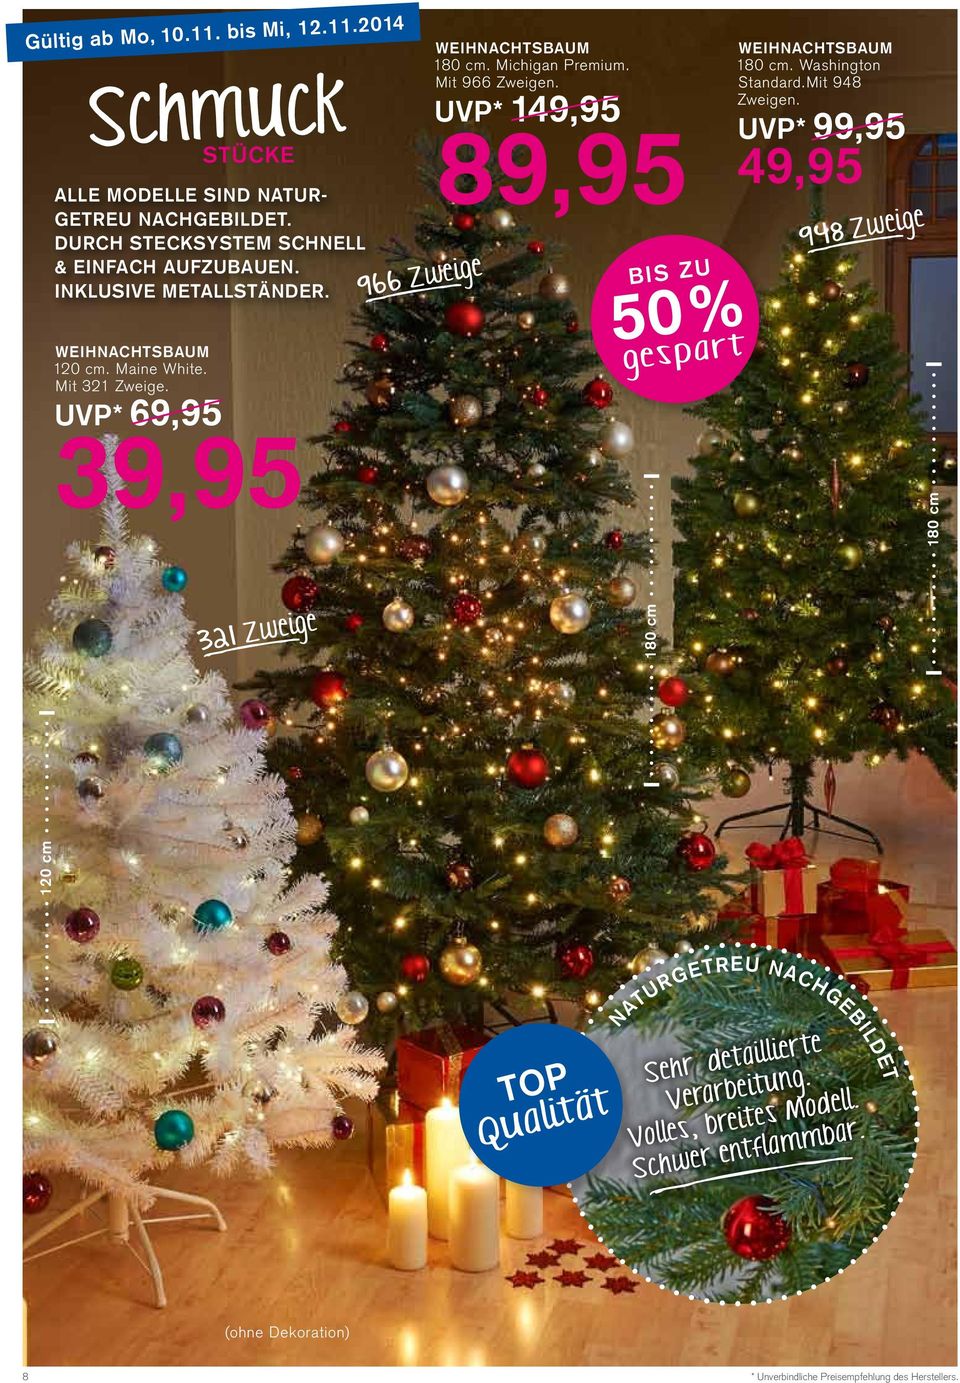 Mit 966 Zweigen. UVP* 14 8 50% Weihnachtsbaum 180 cm. Washington Standard.Mit 948 Zweigen.